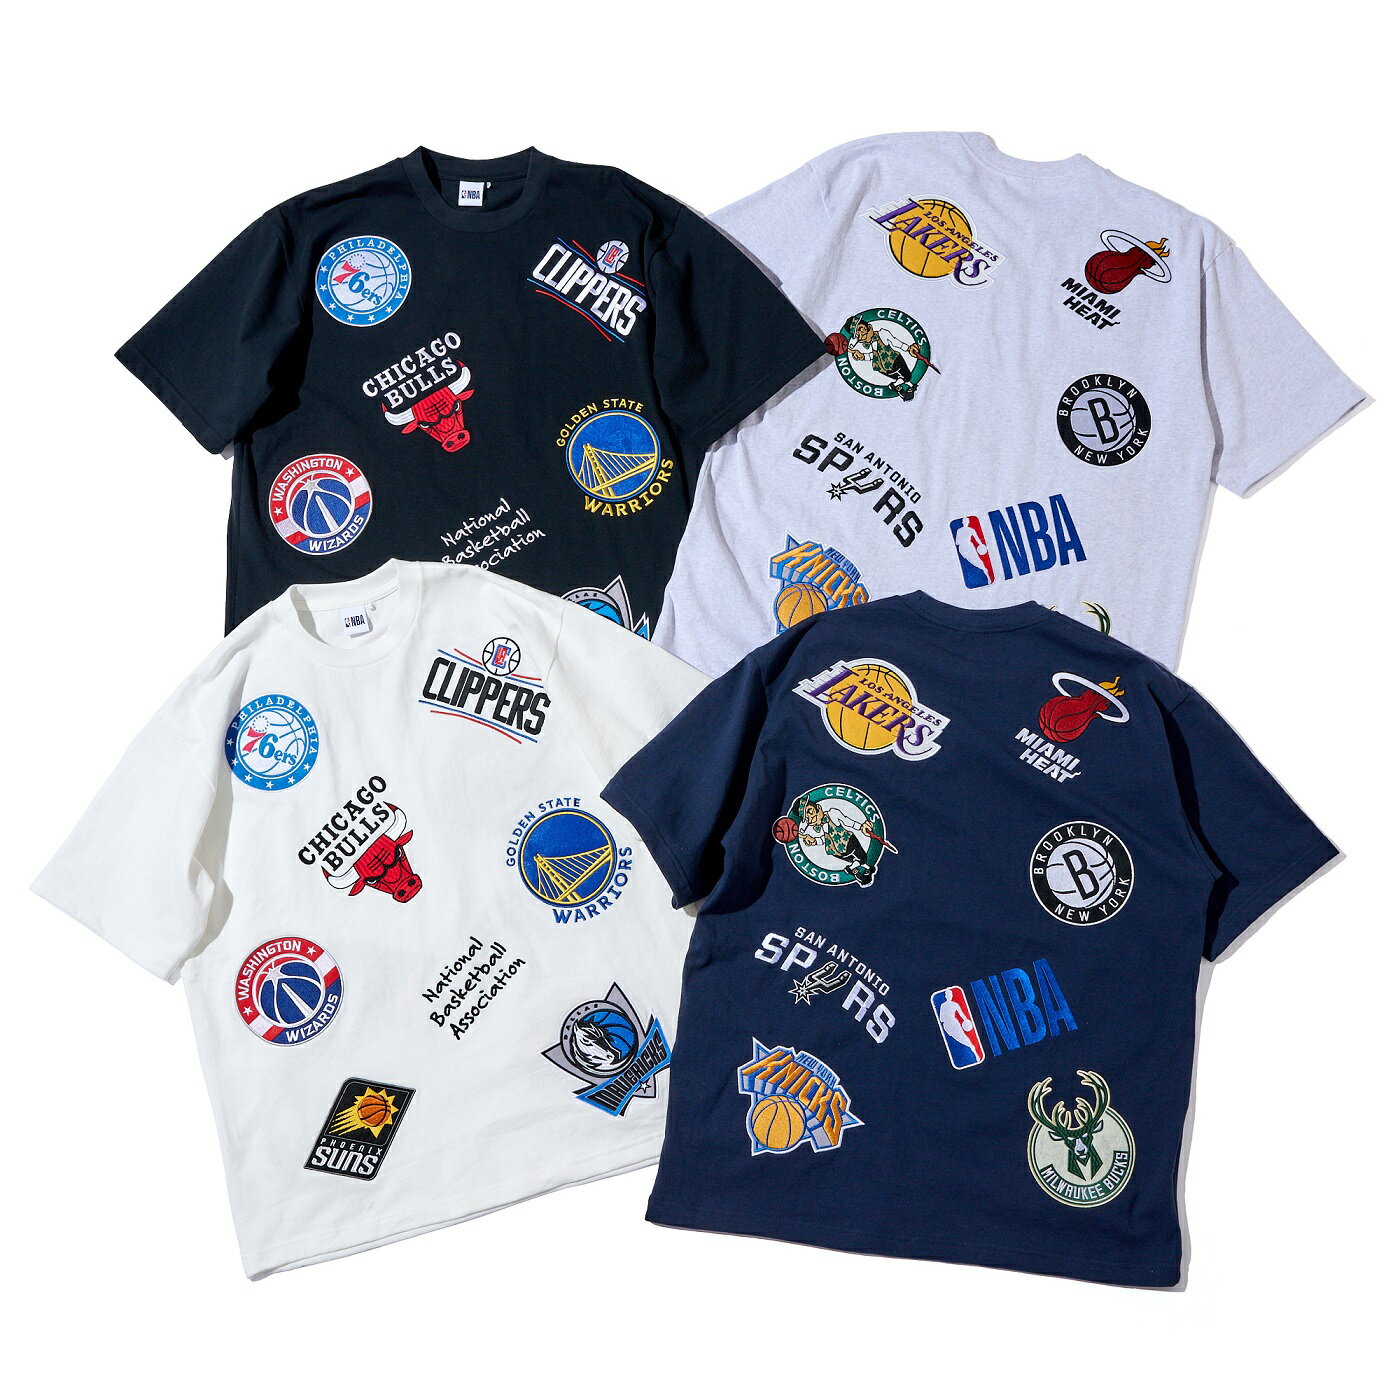 楽天楽天スポーツゾーンNBAチームロゴ ランダム ワッペン Tシャツ / NBA OVERALL TEAM LOGO RANDOM-PATCH T-SHIRTS / ルーズフィット / Summer T-shirts Collection